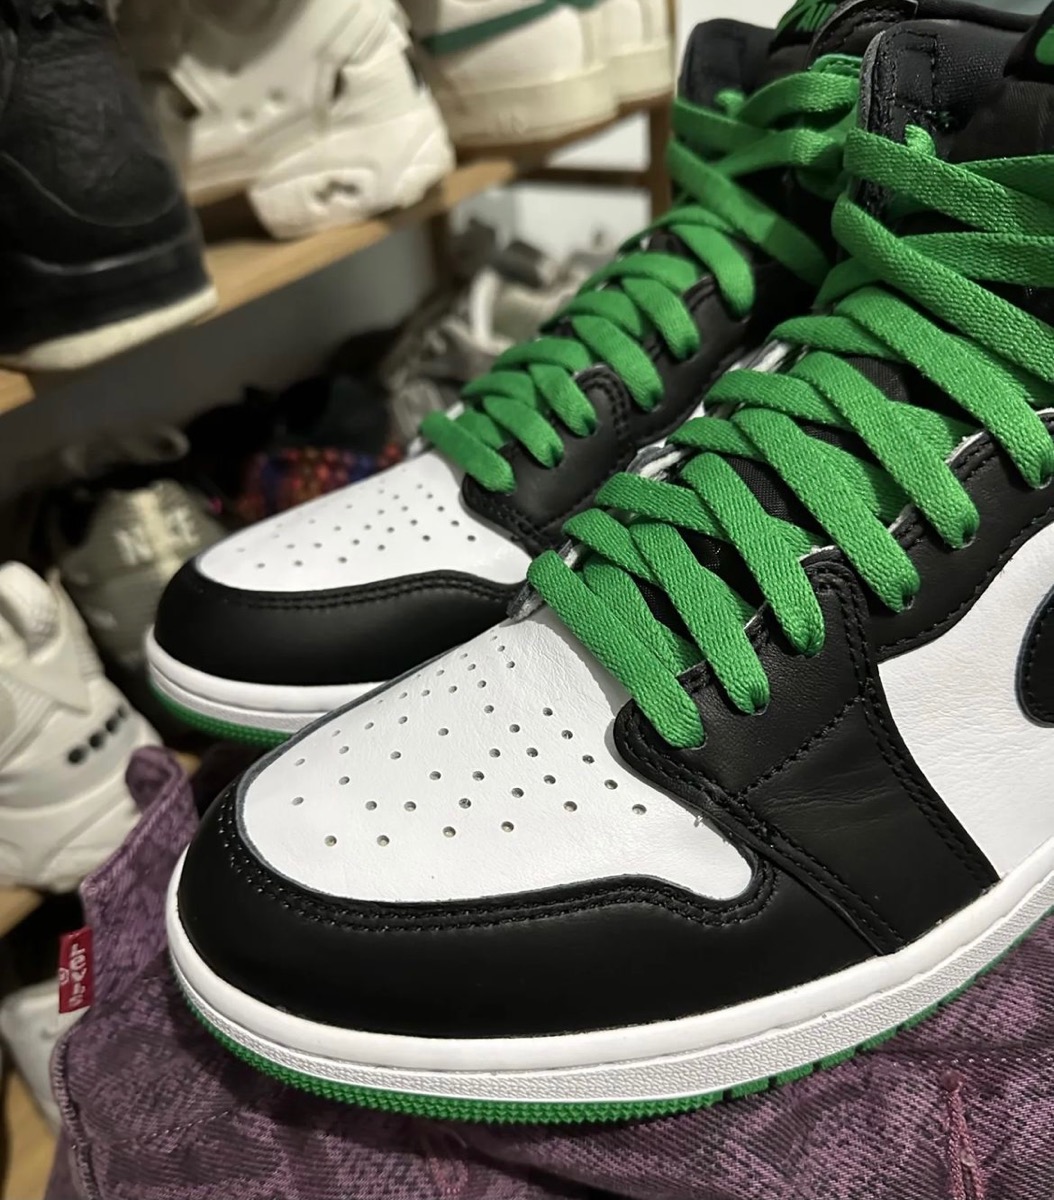 CelticsカラーのNike Air Jordan 1 Retro High OG “Lucky Green